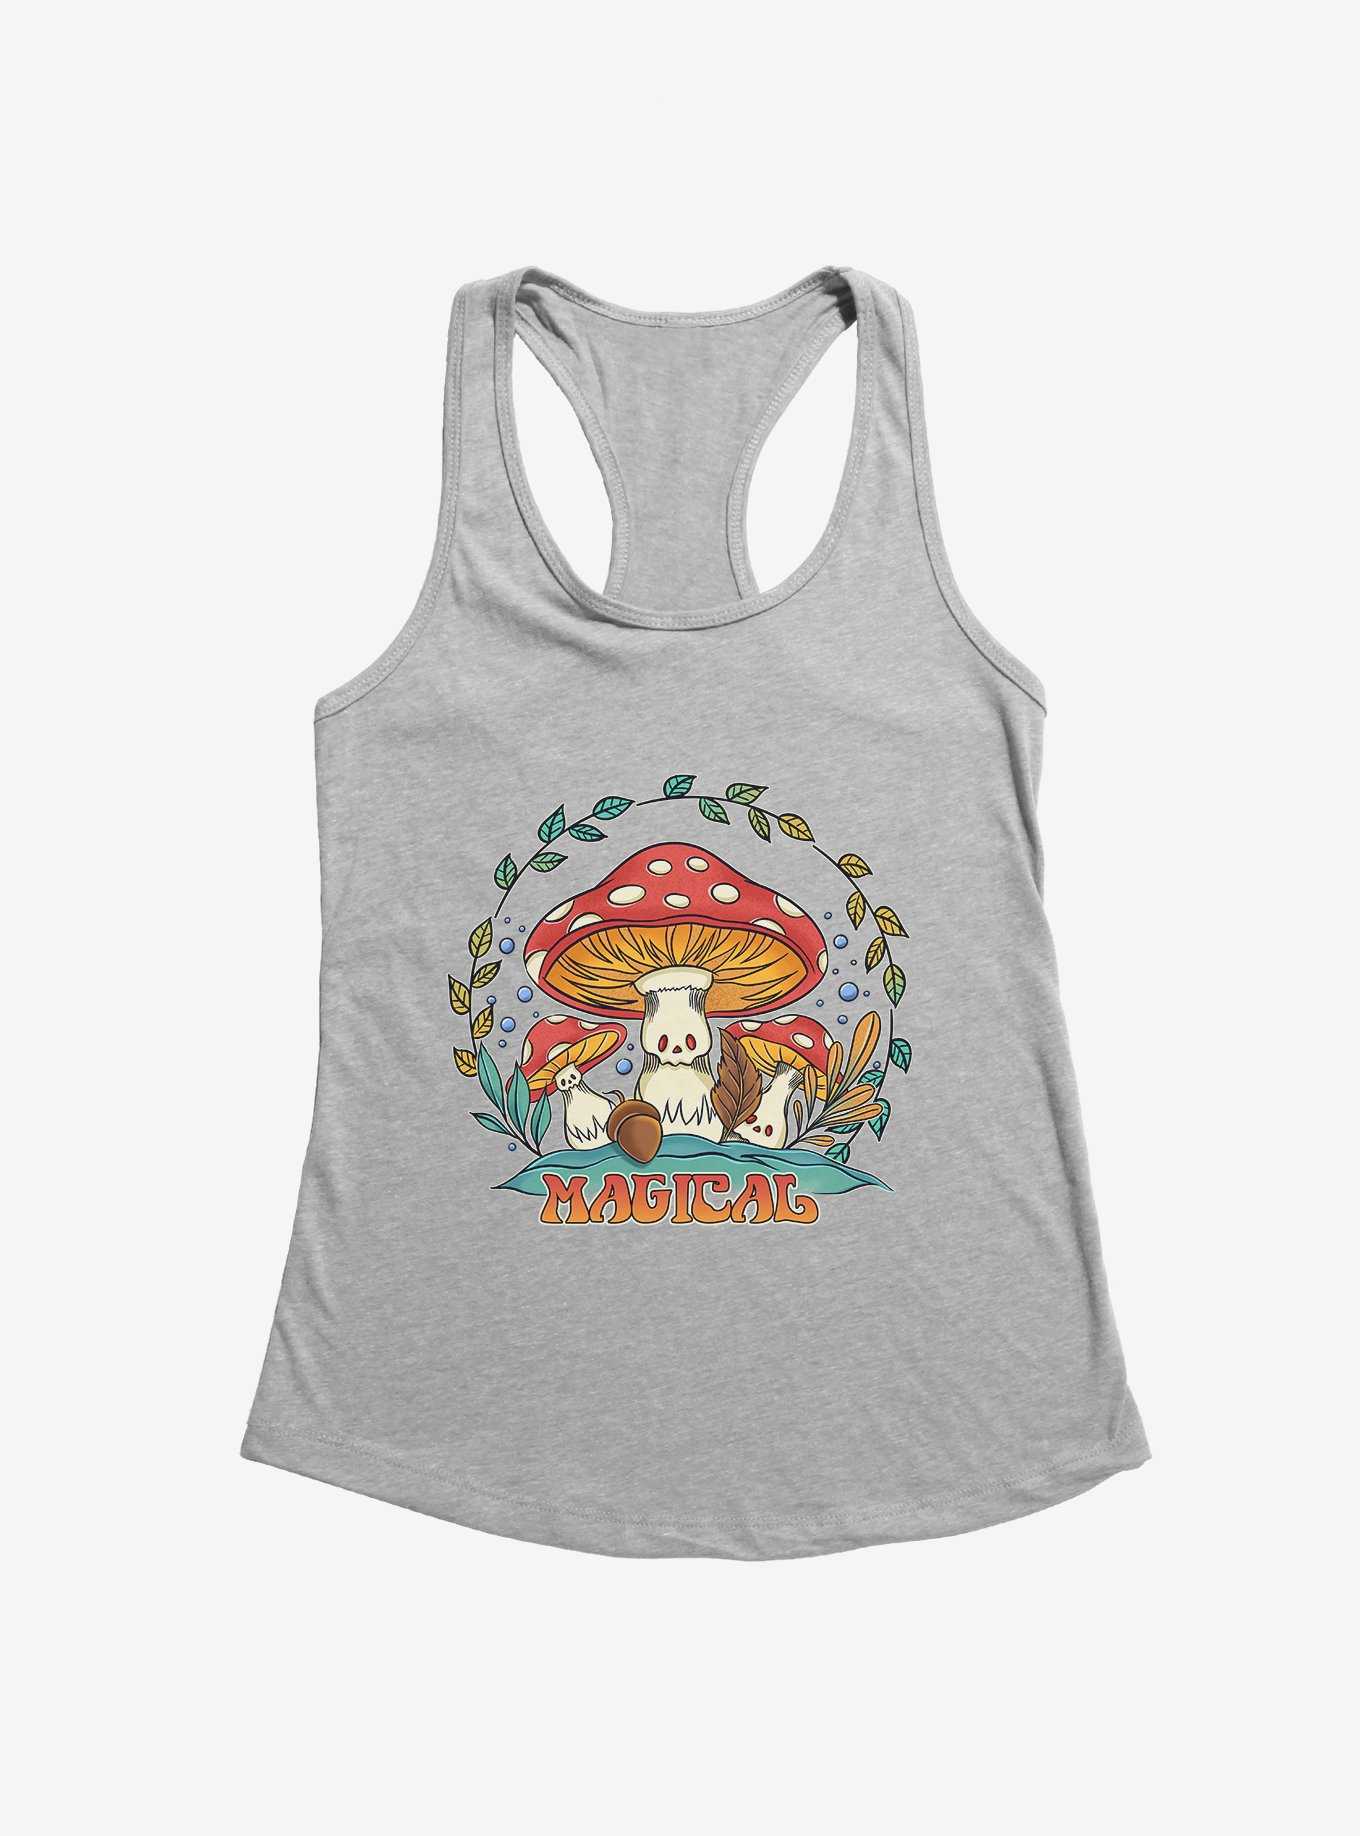 Magical Mushrooms Girls Tank, , hi-res